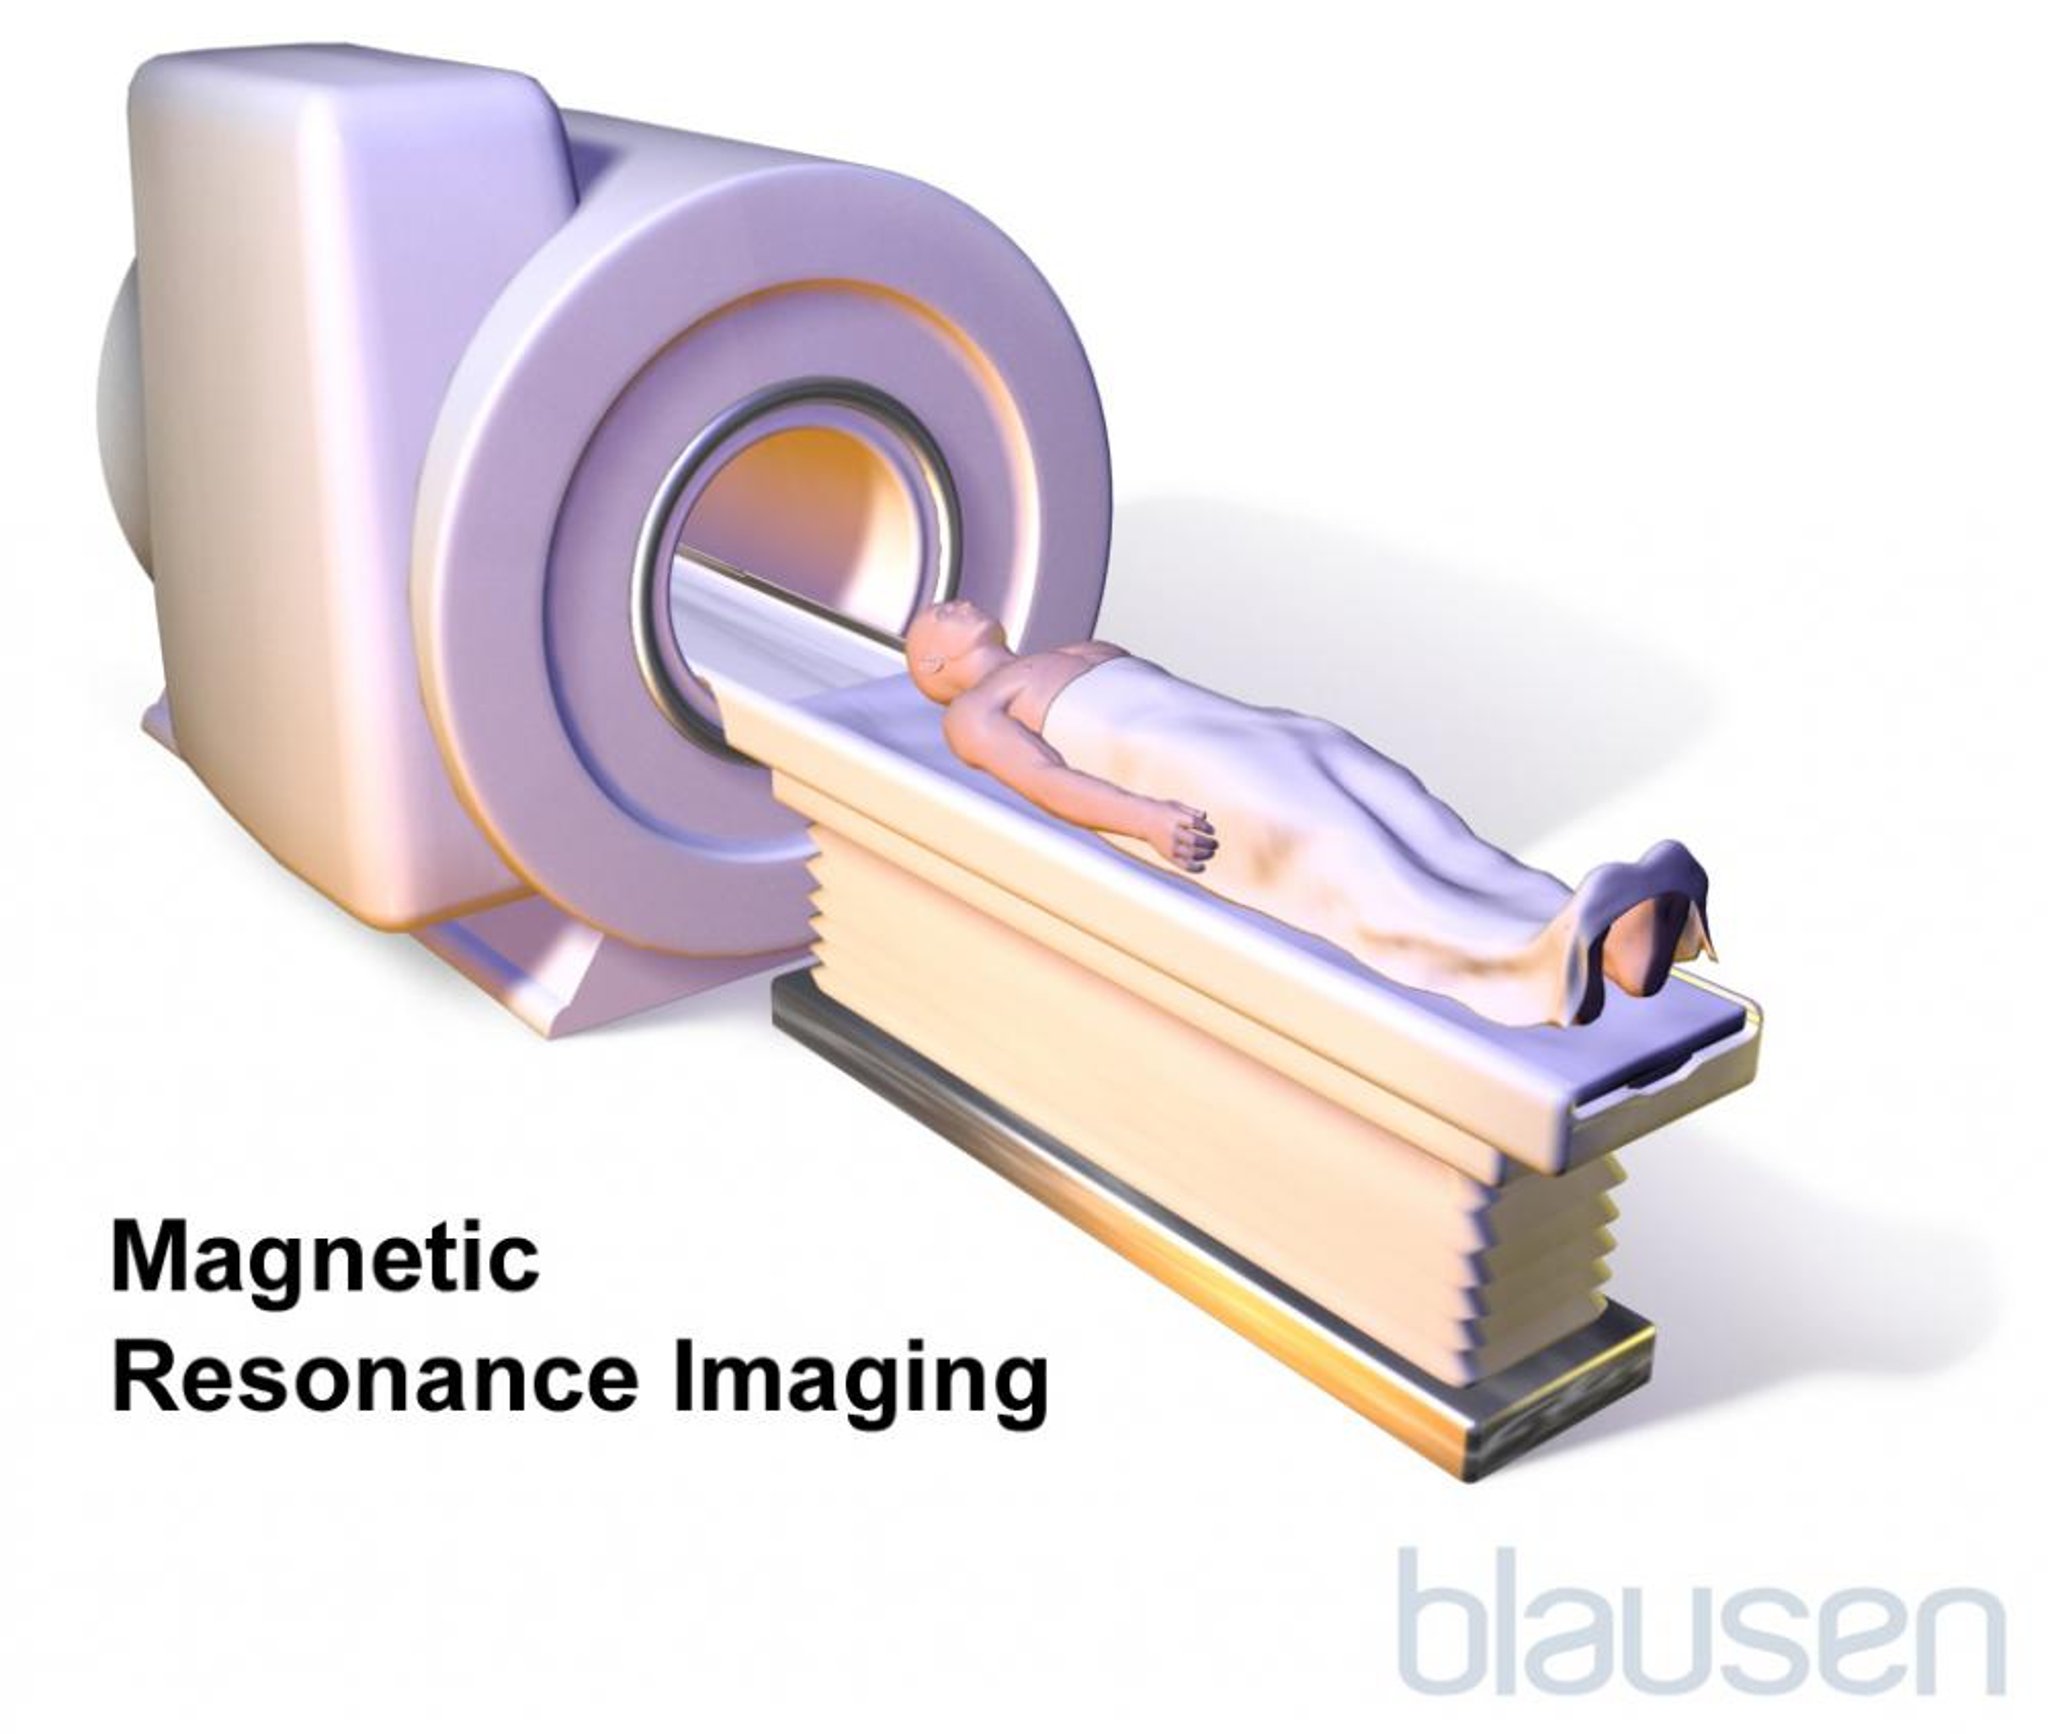 Risonanza magnetica per immagini (RMI)